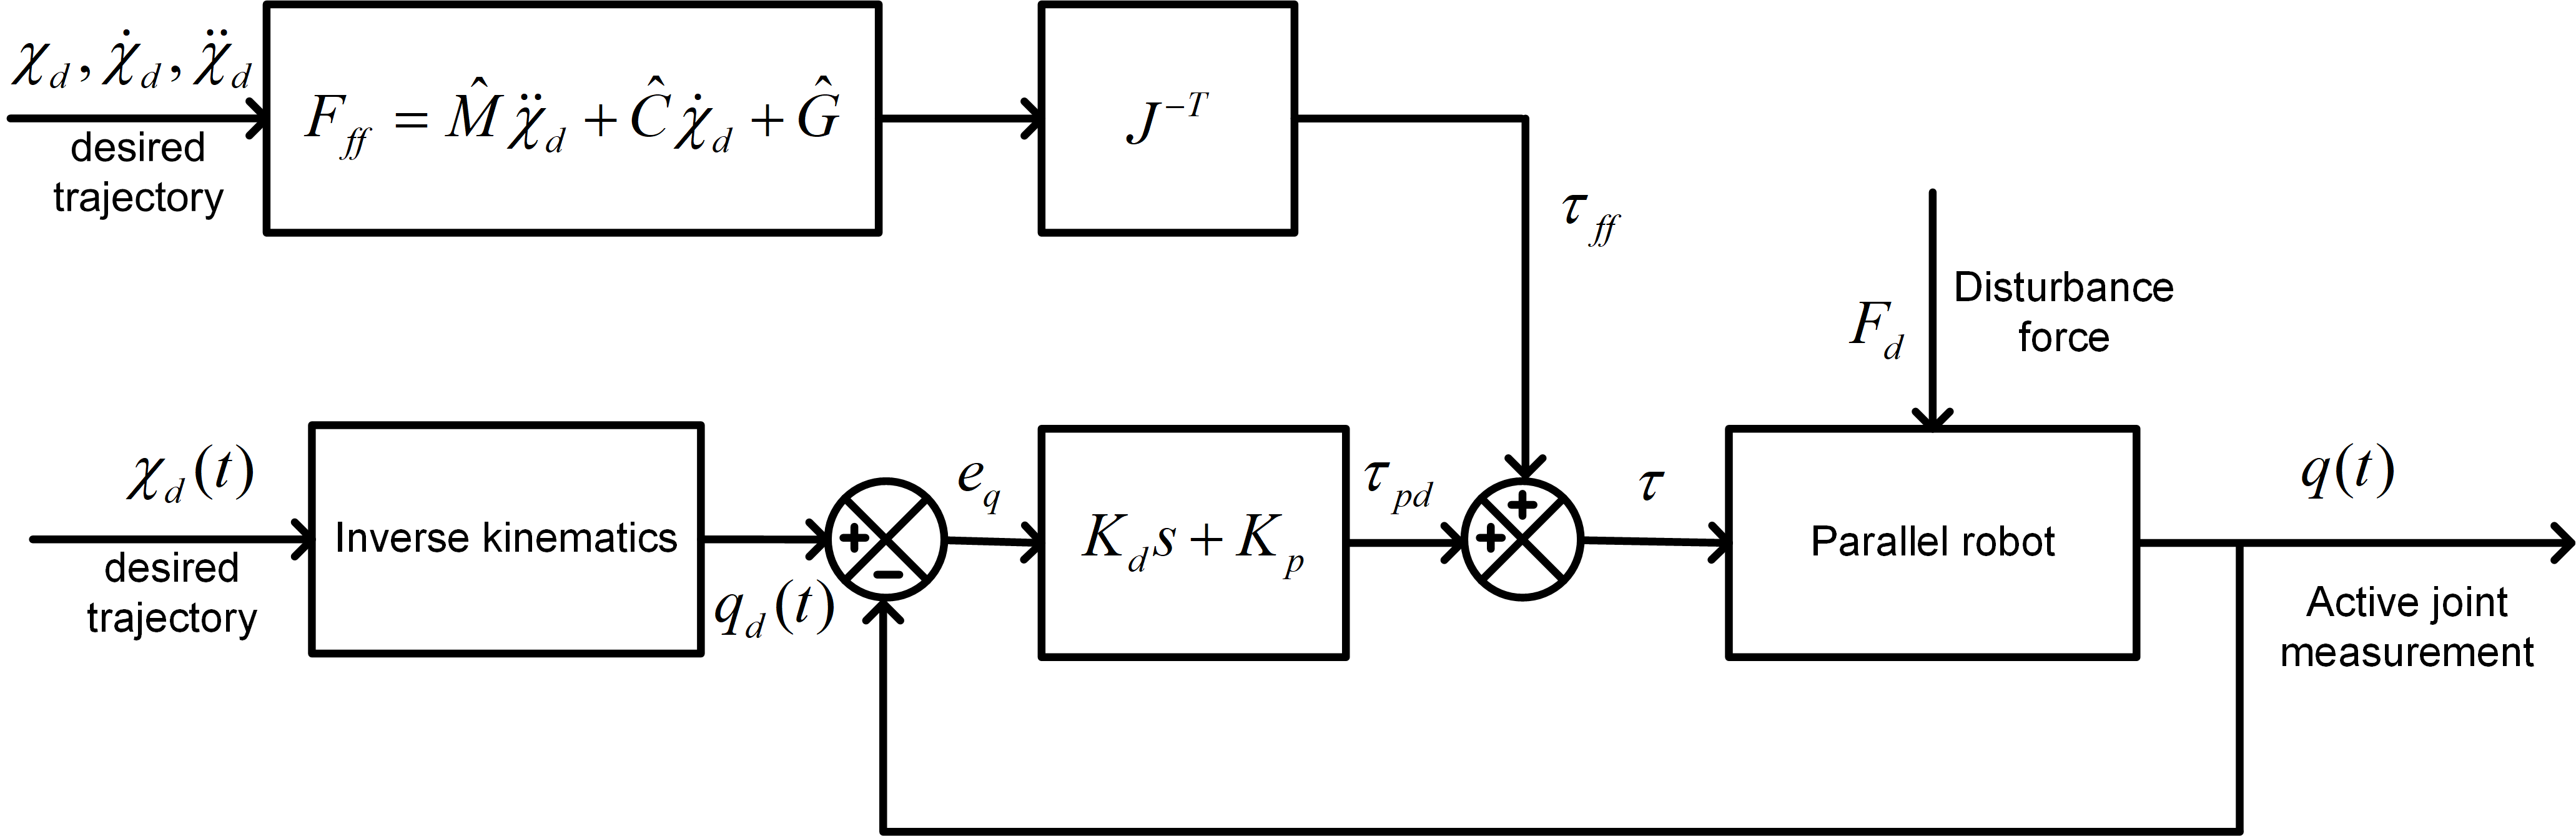 Fig. 3 Feedforward control schematic